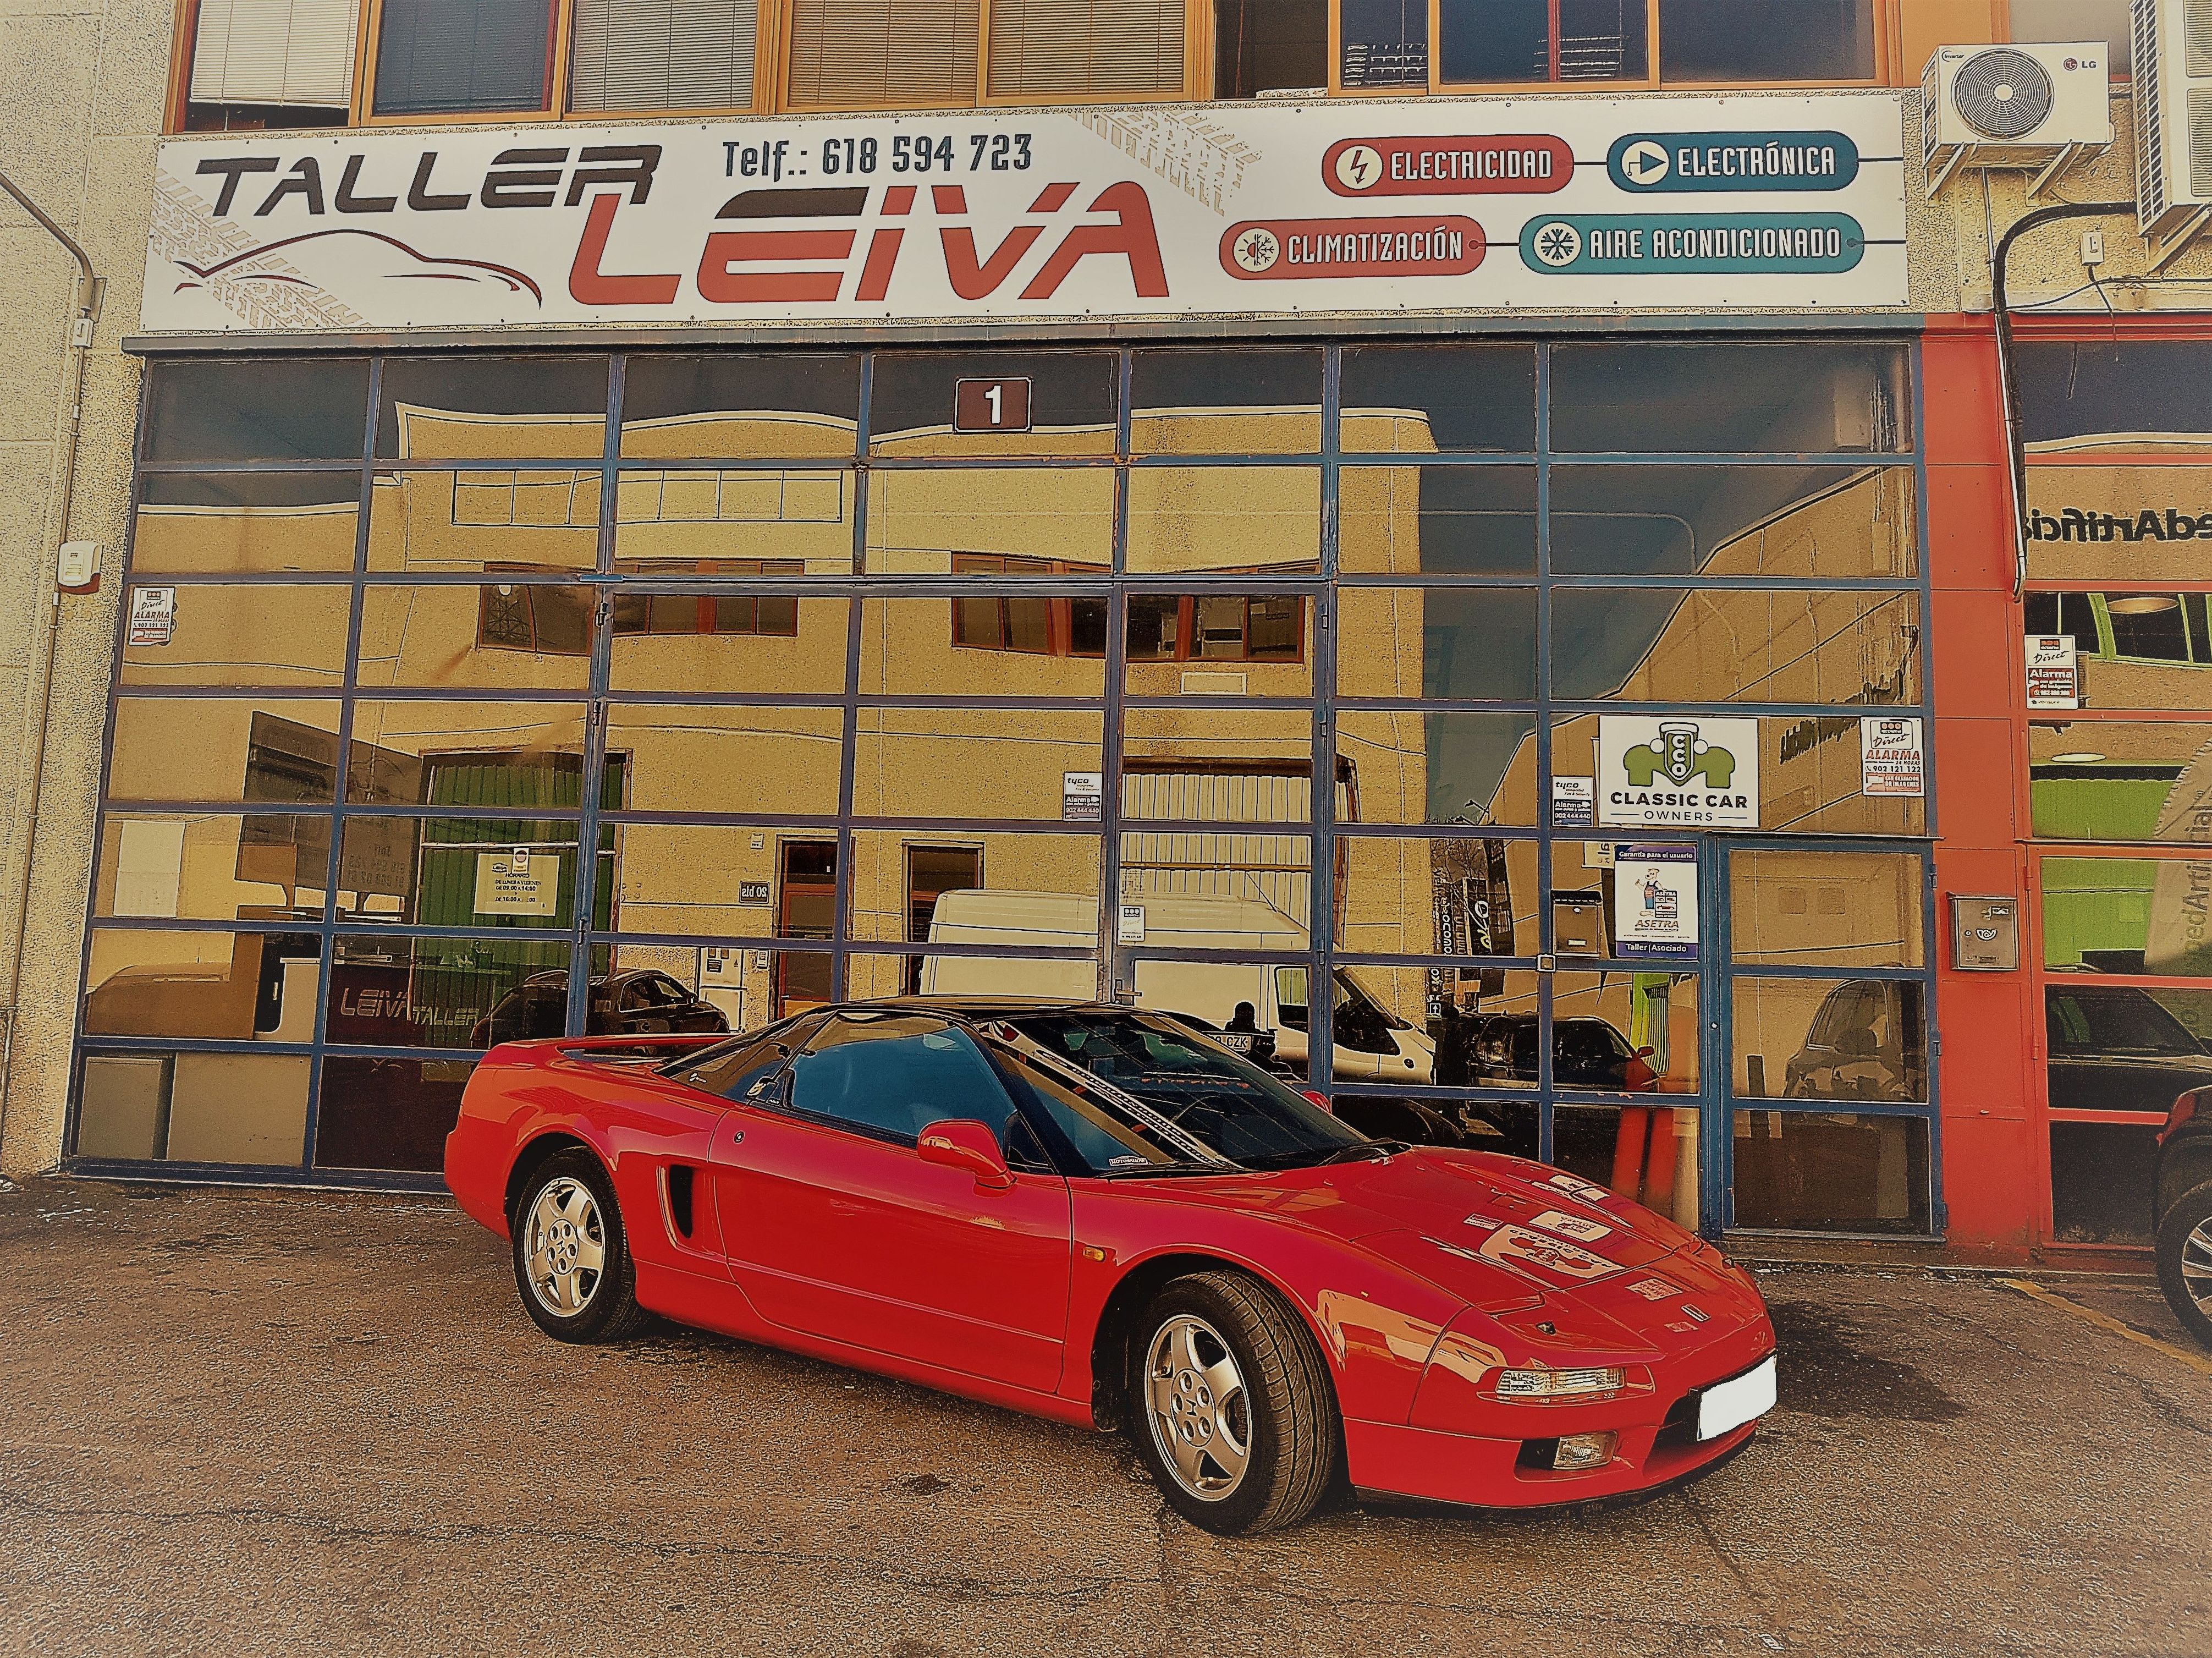 Foto 13 de Talleres de automóviles en Las Rozas | Leiva Taller